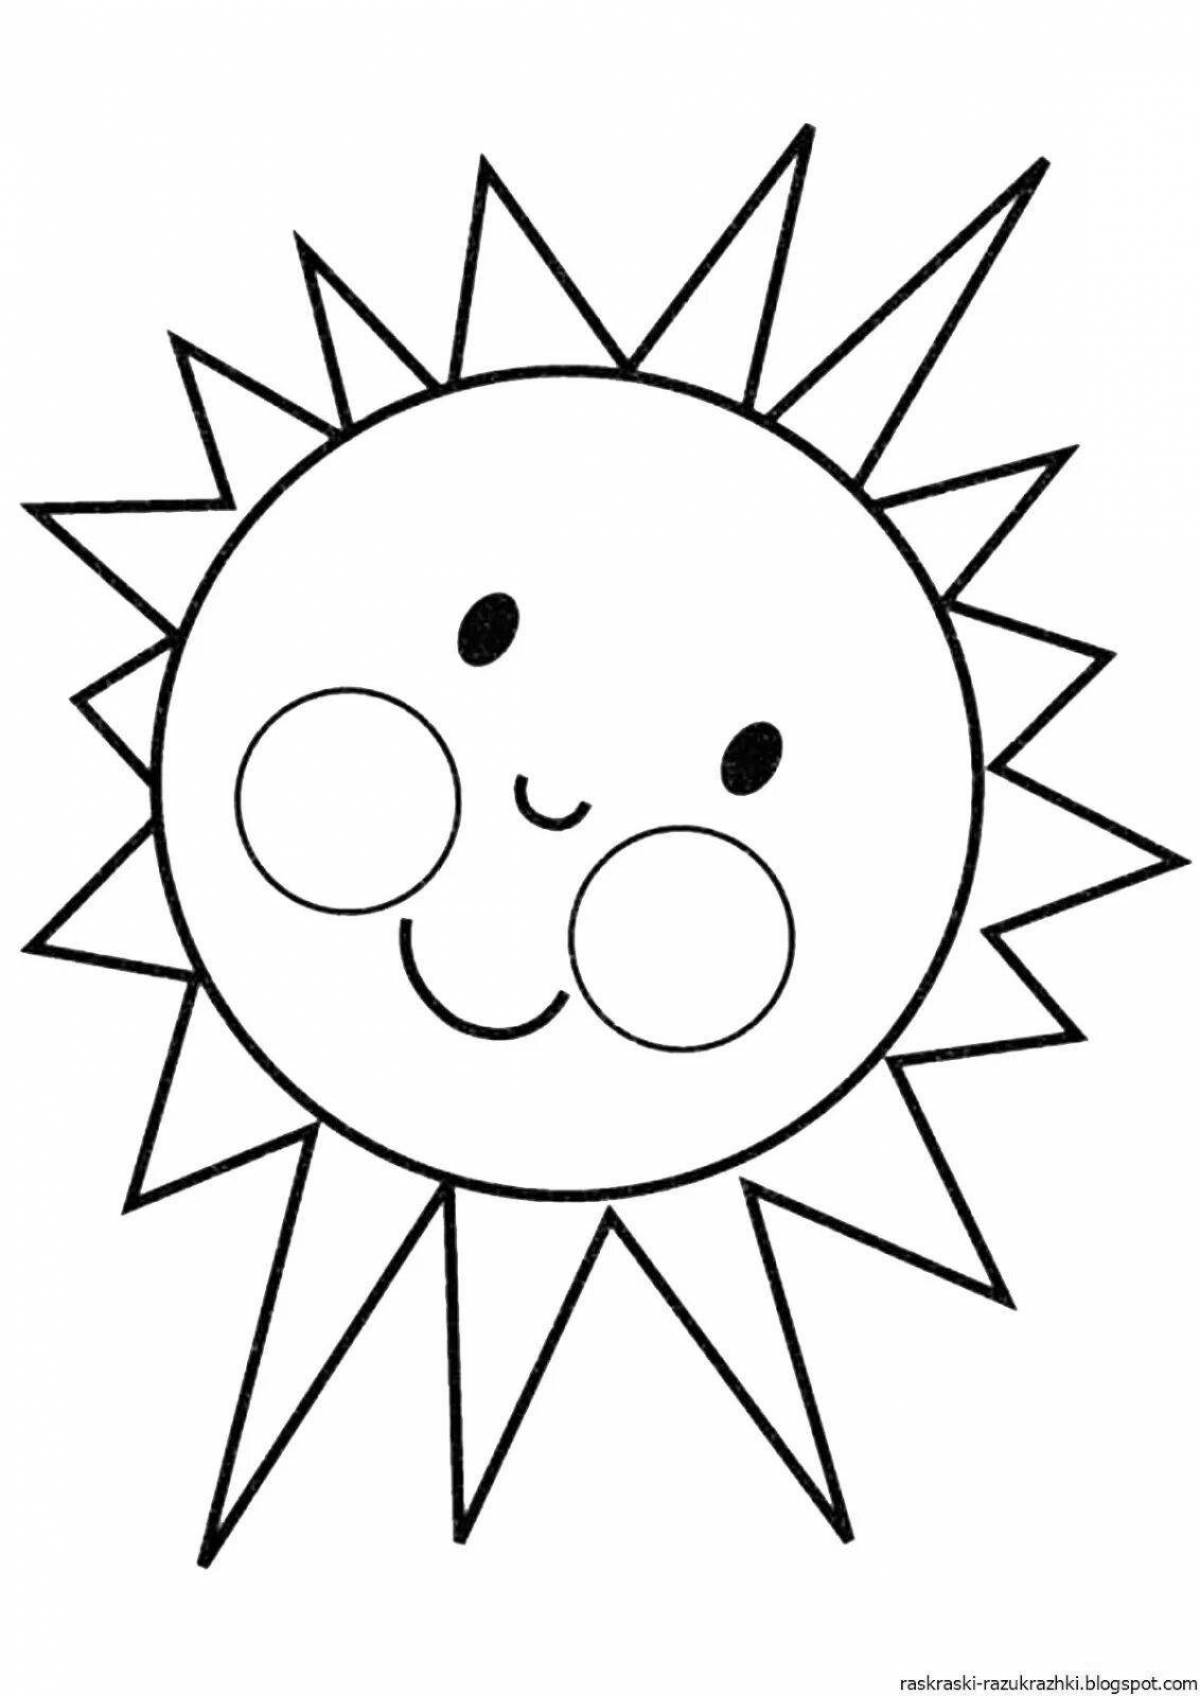 Юмористическая раскраска солнце для детей 4-5 лет